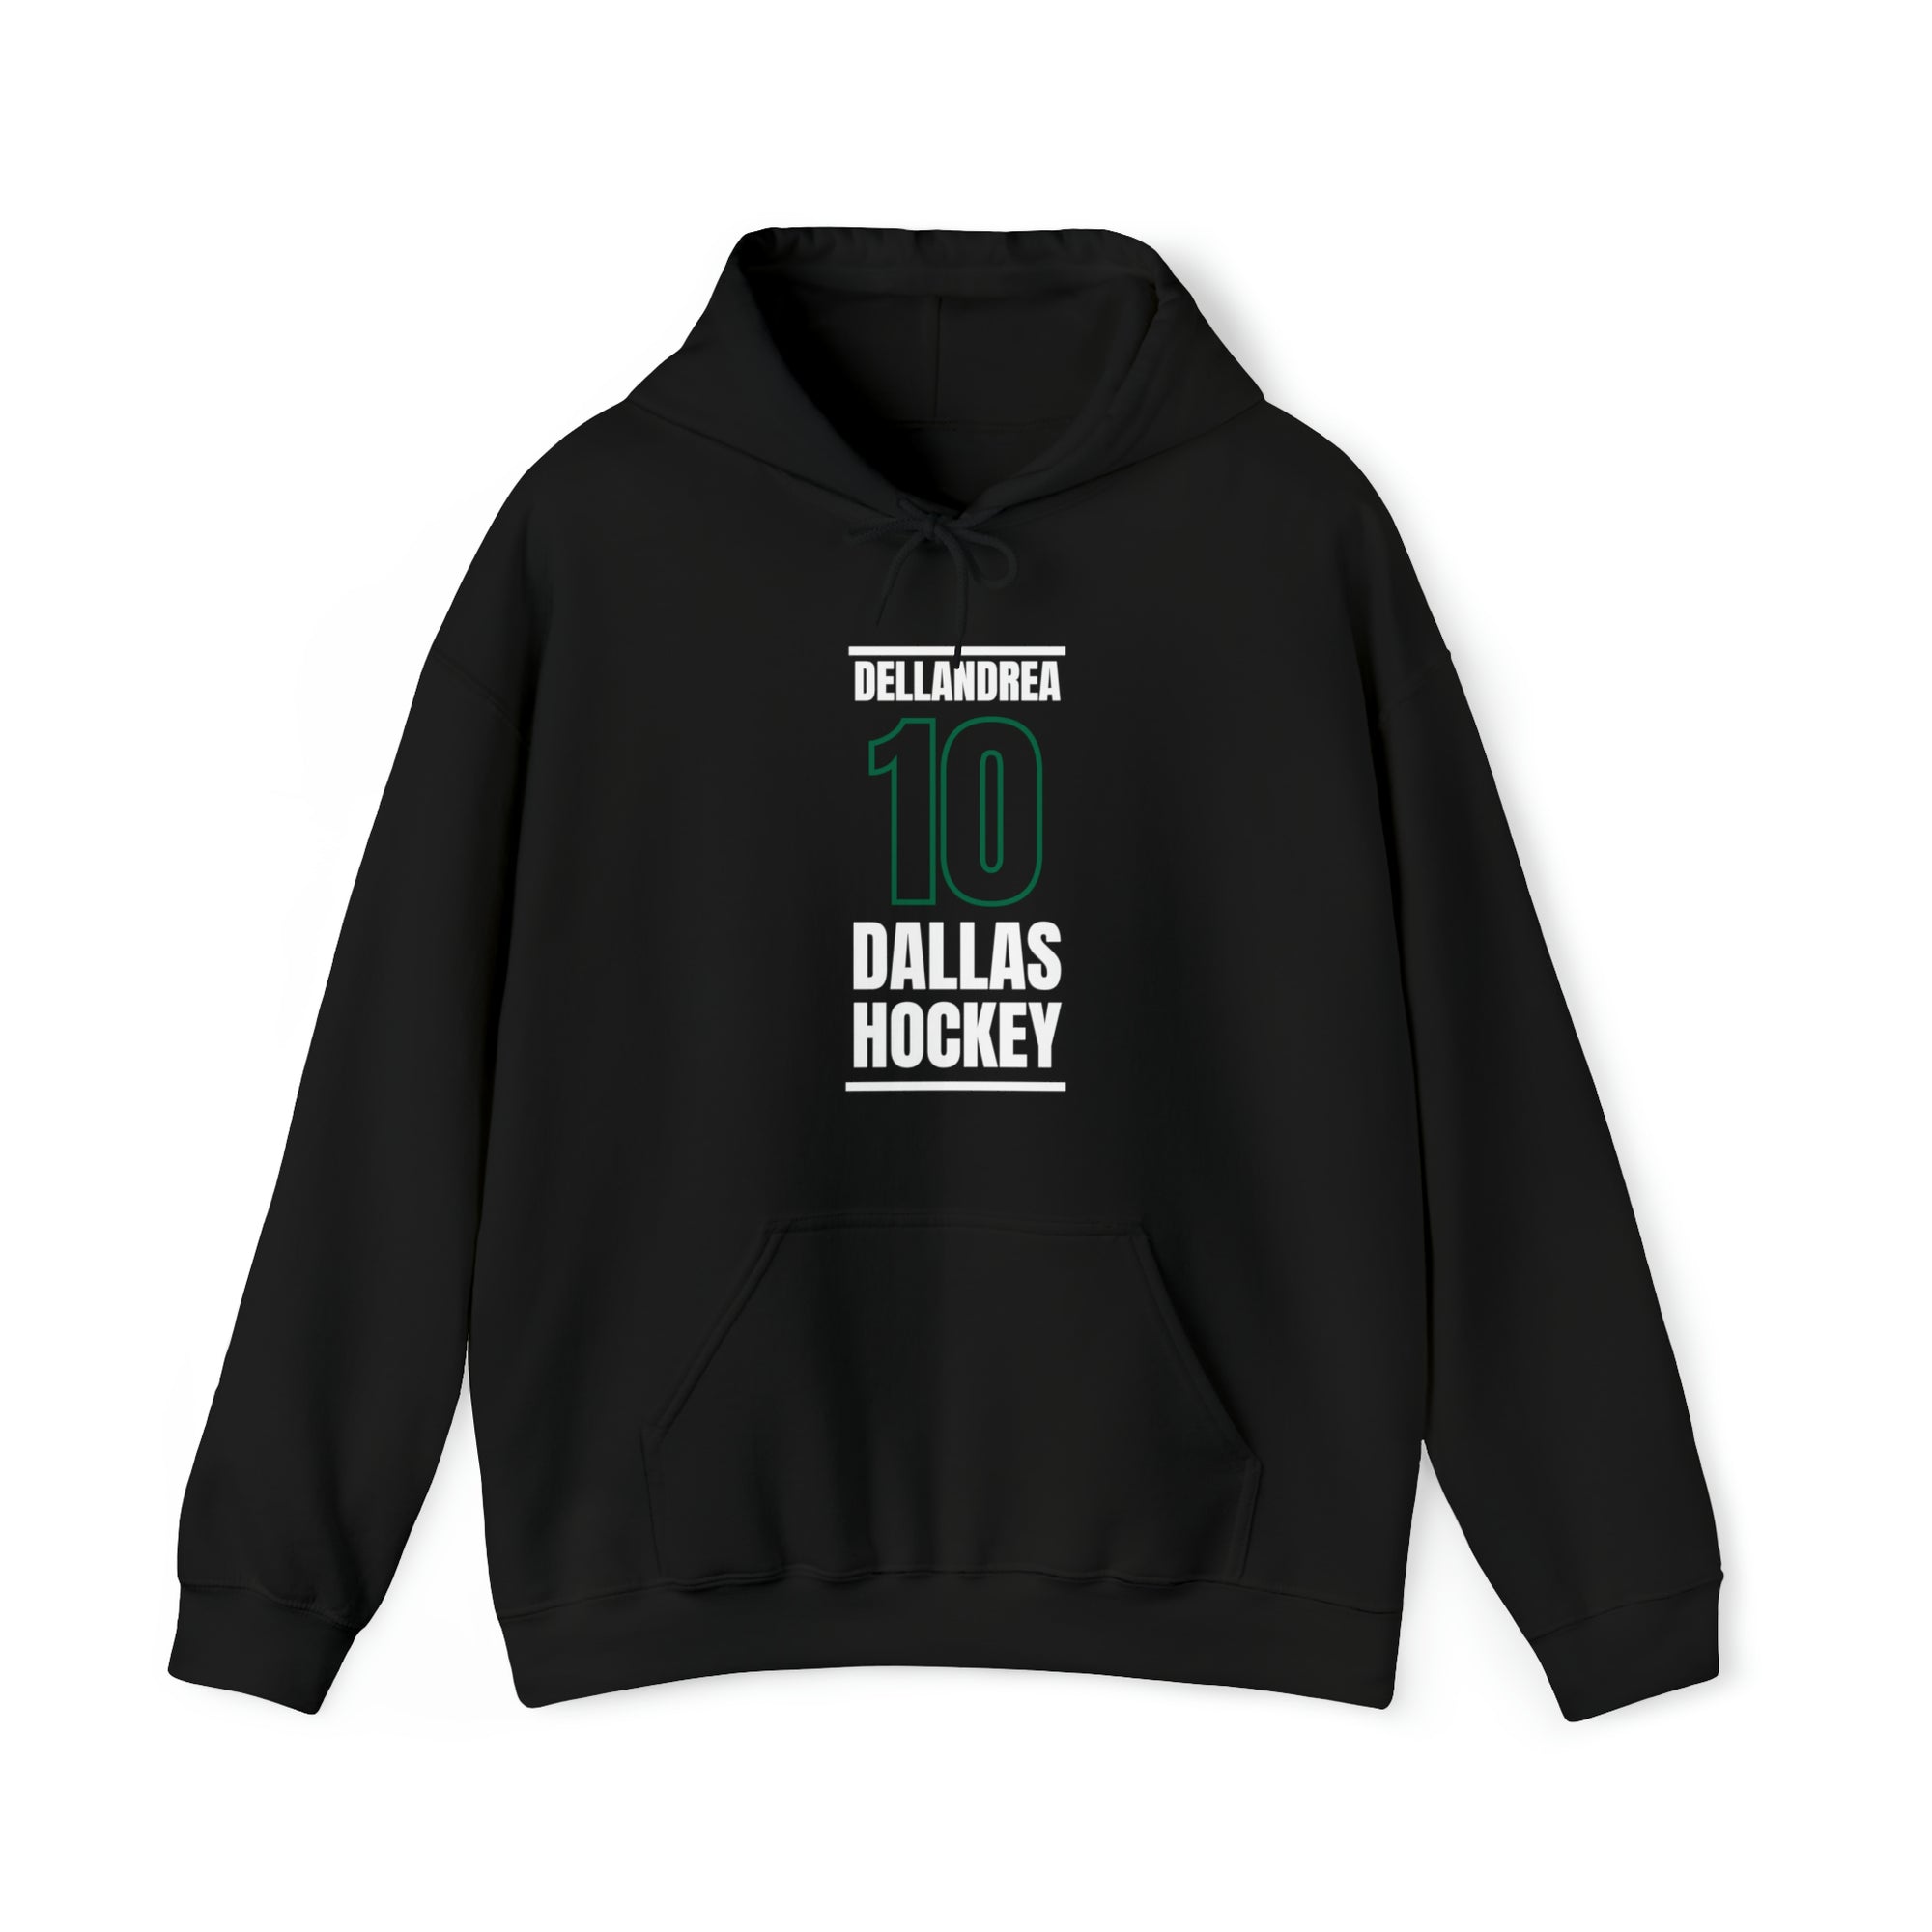 Dellandrea 10 Dallas Hockey Black Vertical Design Unisex Hooded Sweatshirt